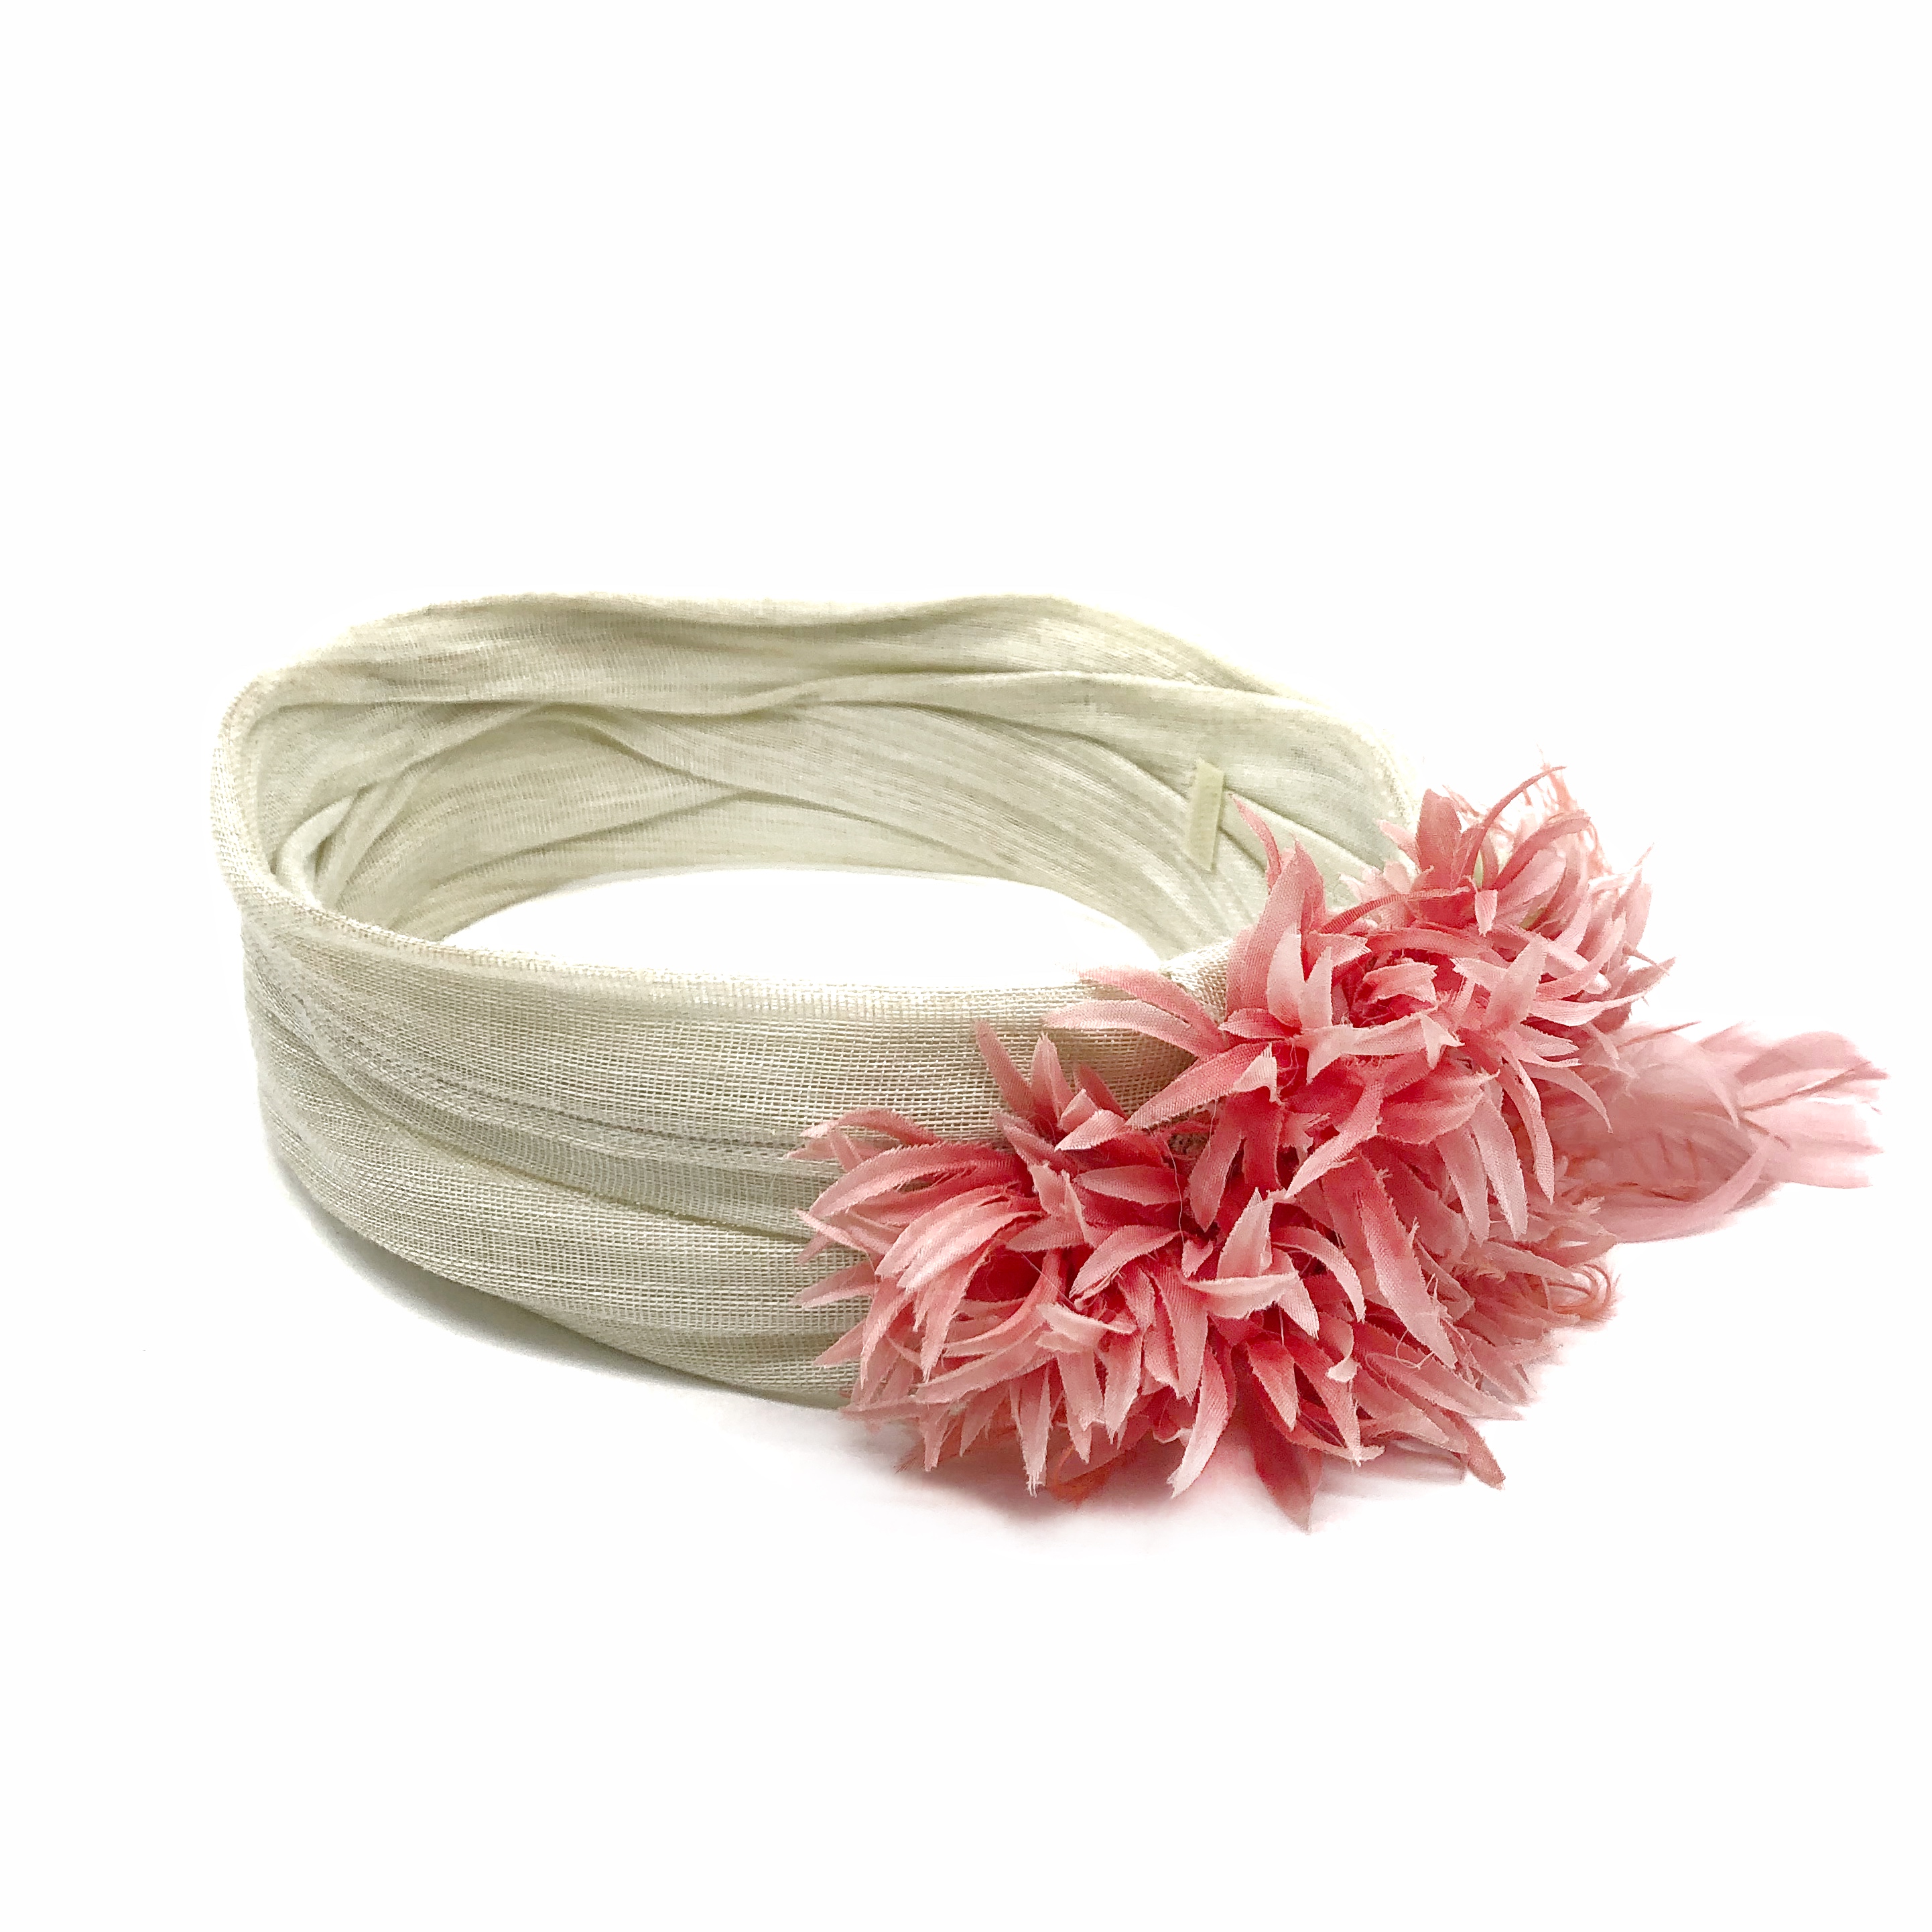 El Turbante Beige con Flor y Plumas Rosas de Lito & Lola está creado a mano de nuestras expertas en tocados y accesorios para el pelo.